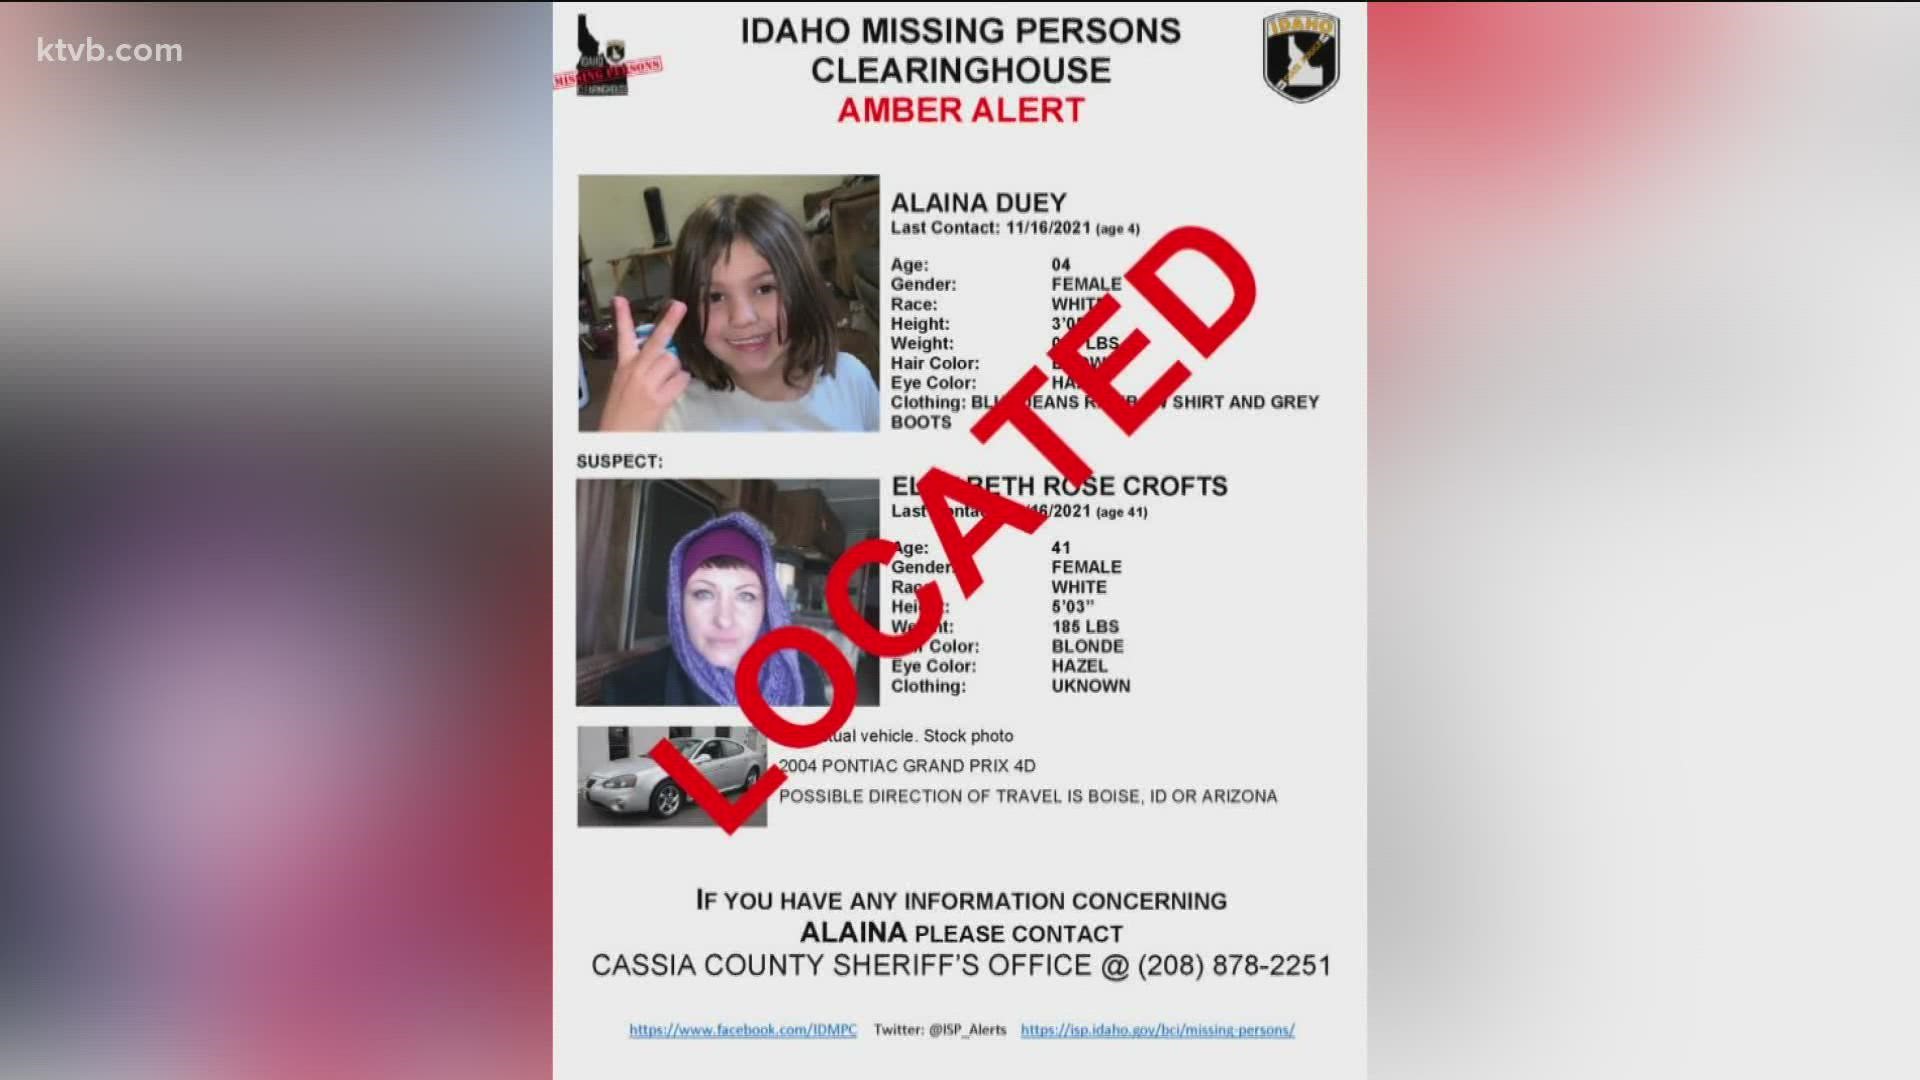 Alaina Duey was found safe in Elko, Nevada.